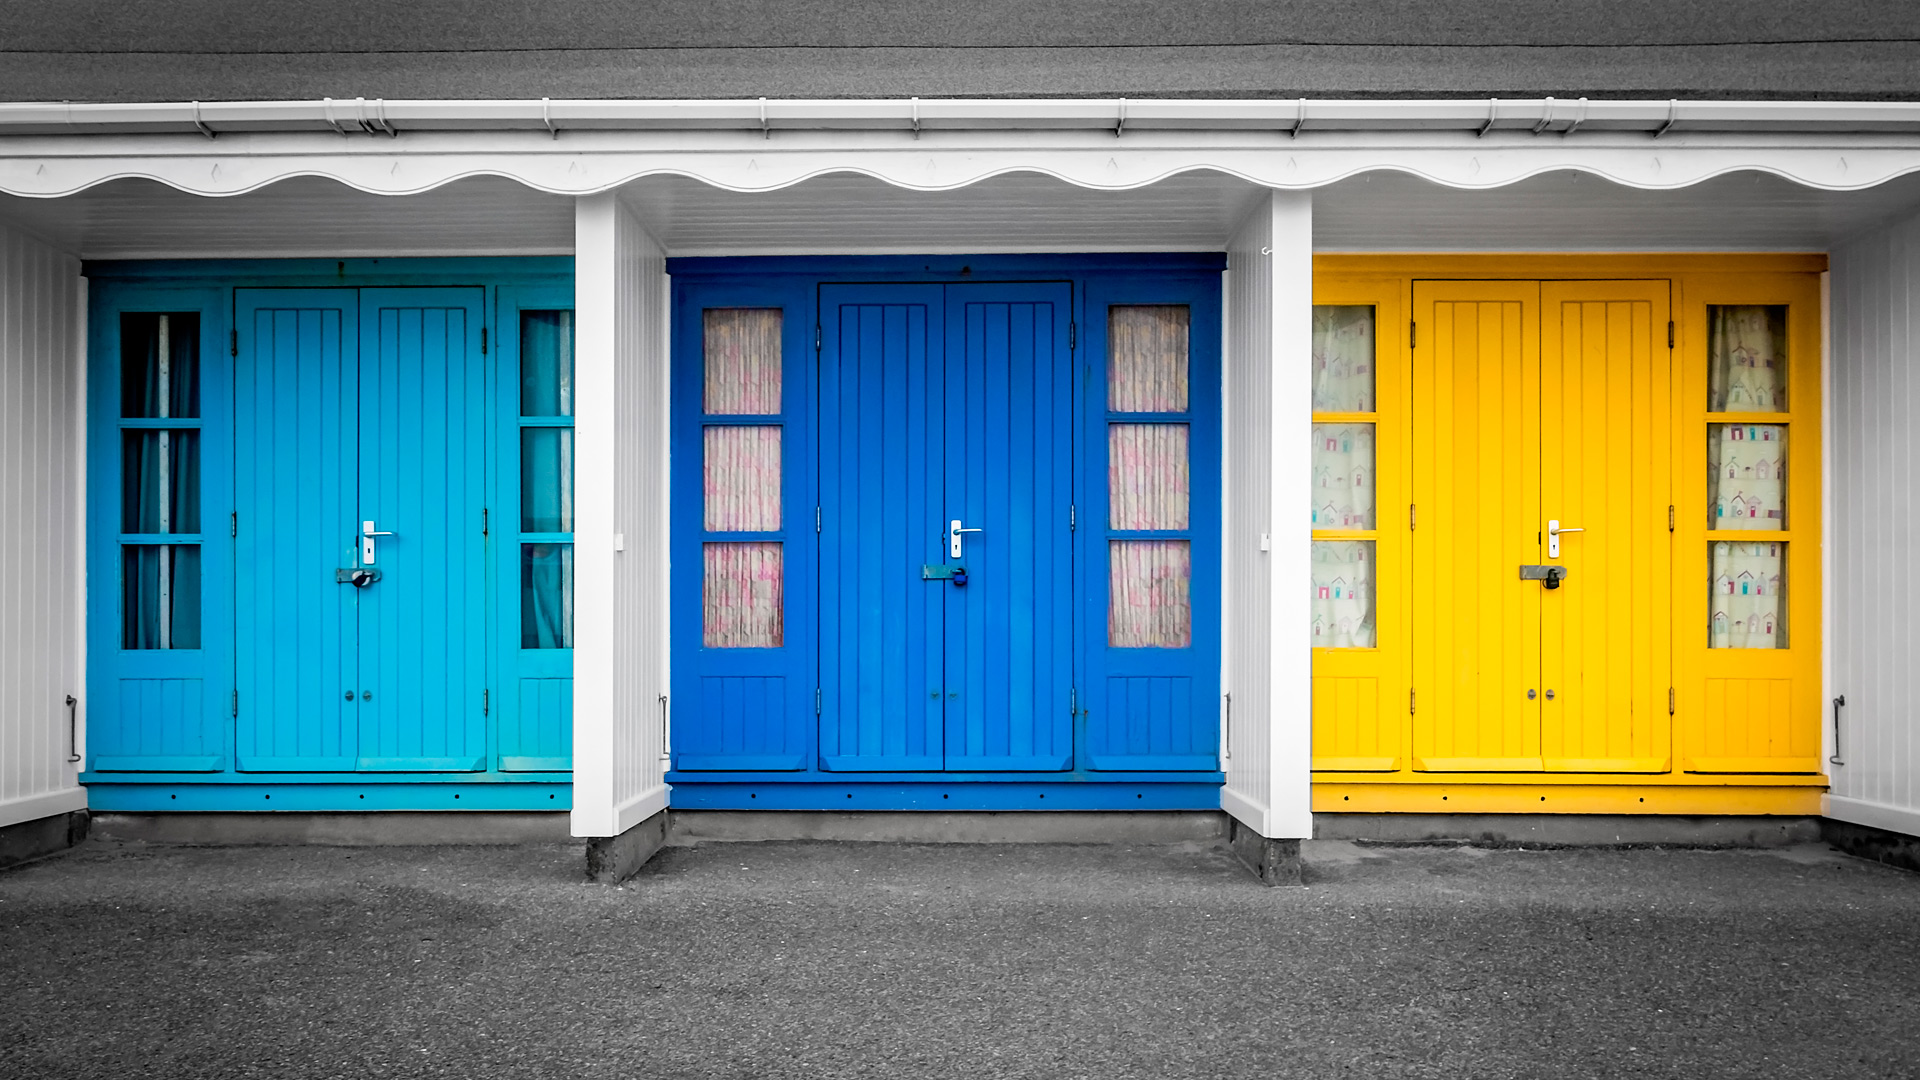 Fachada com portas coloridas